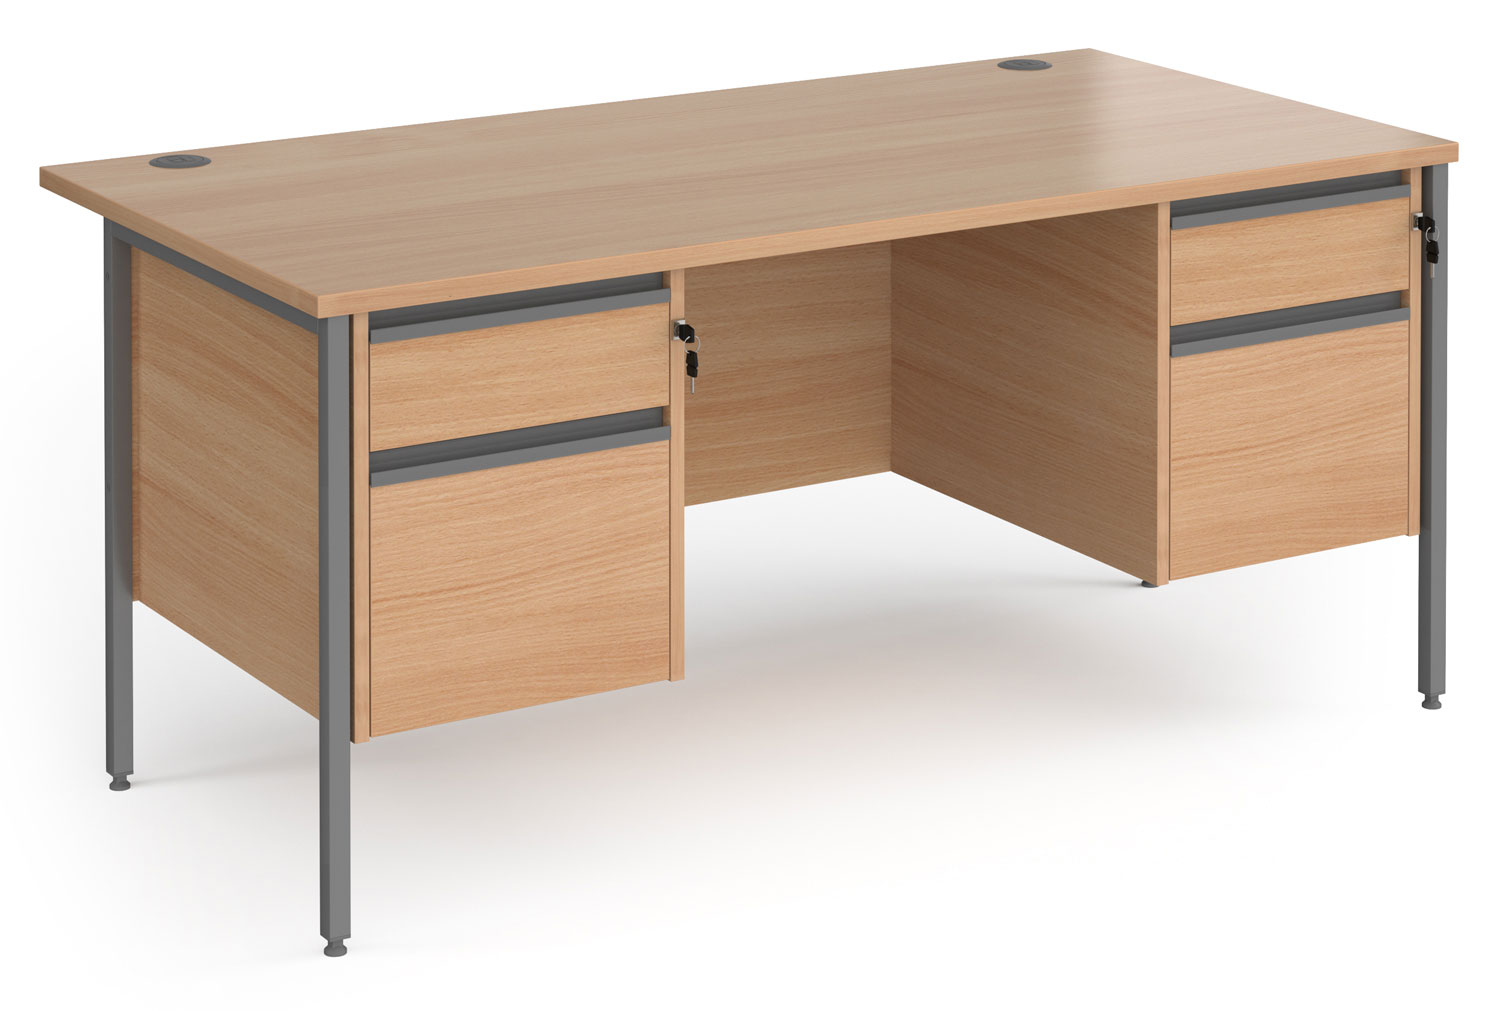 Value Line Classic+ Rectangular H-Leg Office Desk 2+2 Drawers (Graphite Leg), 160wx80dx73h (cm), Beech, Fully Installed